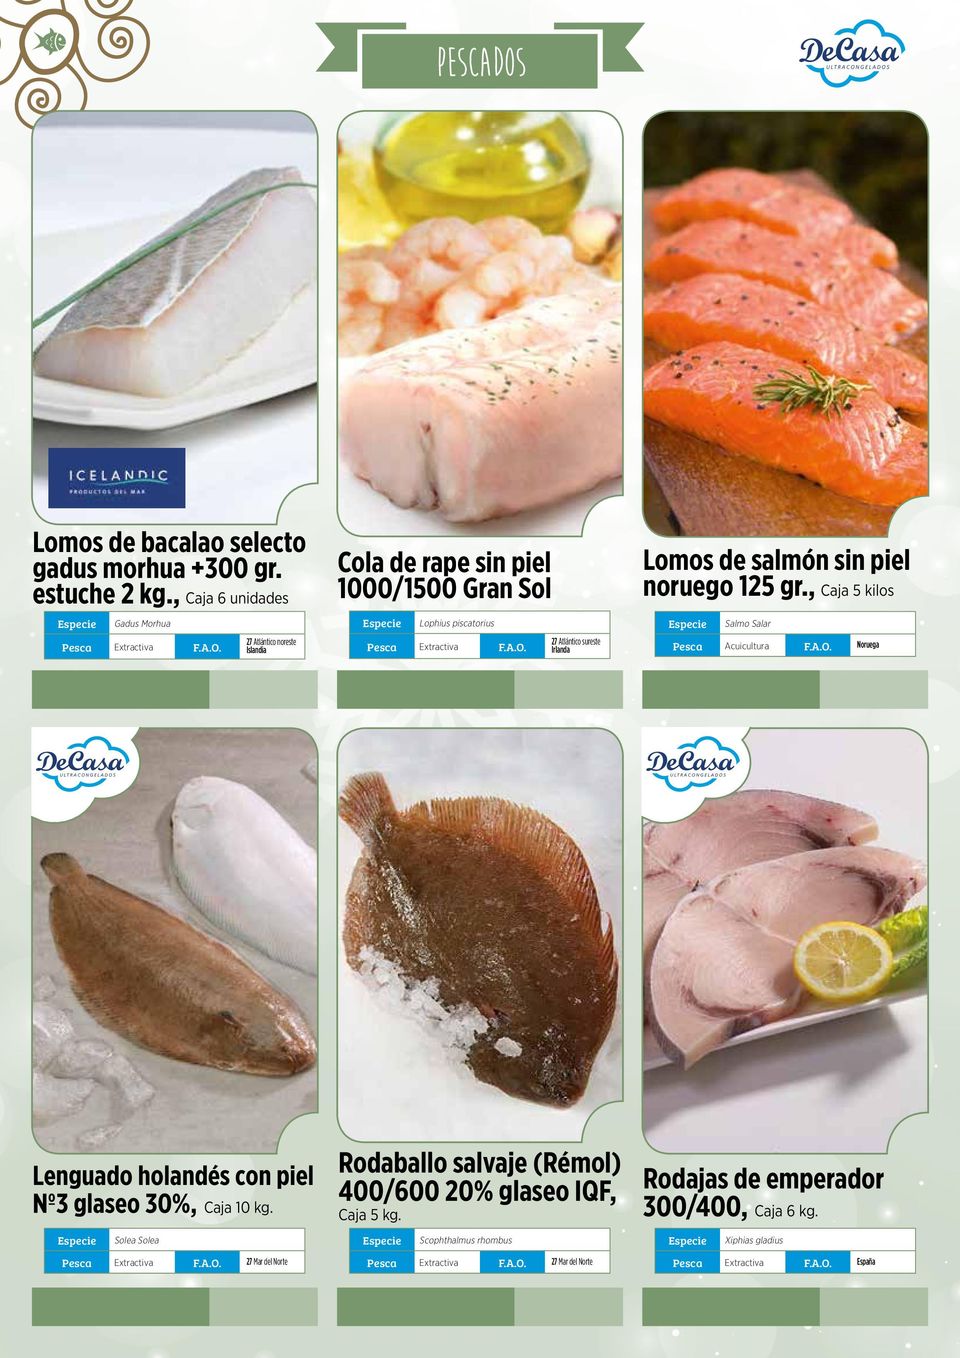 sureste Irlanda Lomos de salmón sin piel noruego 125 gr., Caja 5 kilos Salmo Salar Pesca Acuicultura F.A.O.